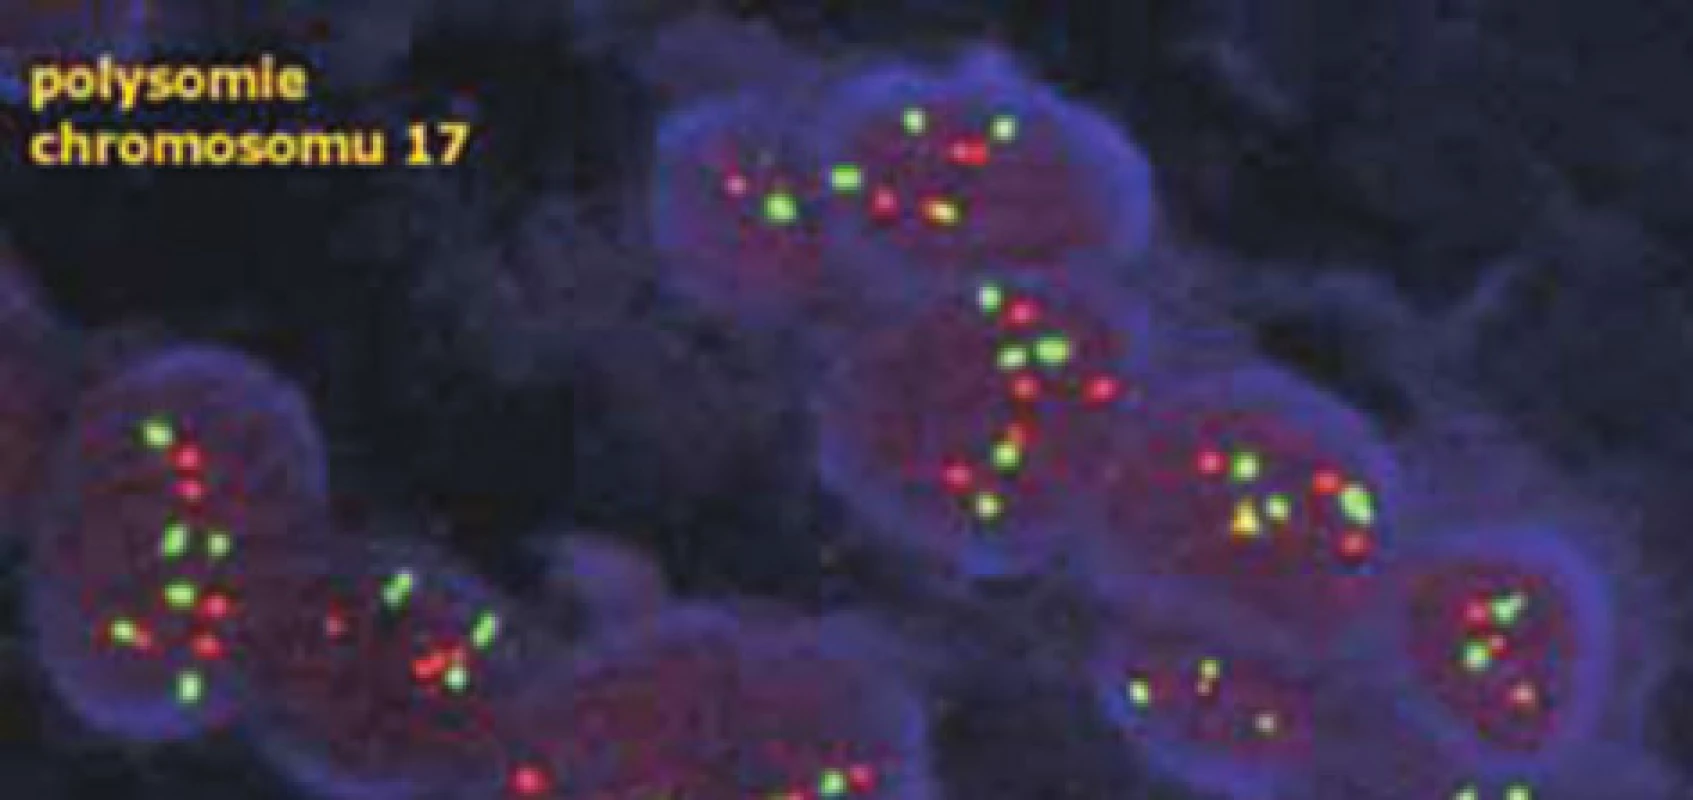 V případě polysomie chromozomu 17 je zvýšen nejen počet červených signálů genu HER2, ale také počet červených centromerických signálů – poměr mezi však zůstává obdobný jako u normálních buněk (dle www.patologie.info.cz)